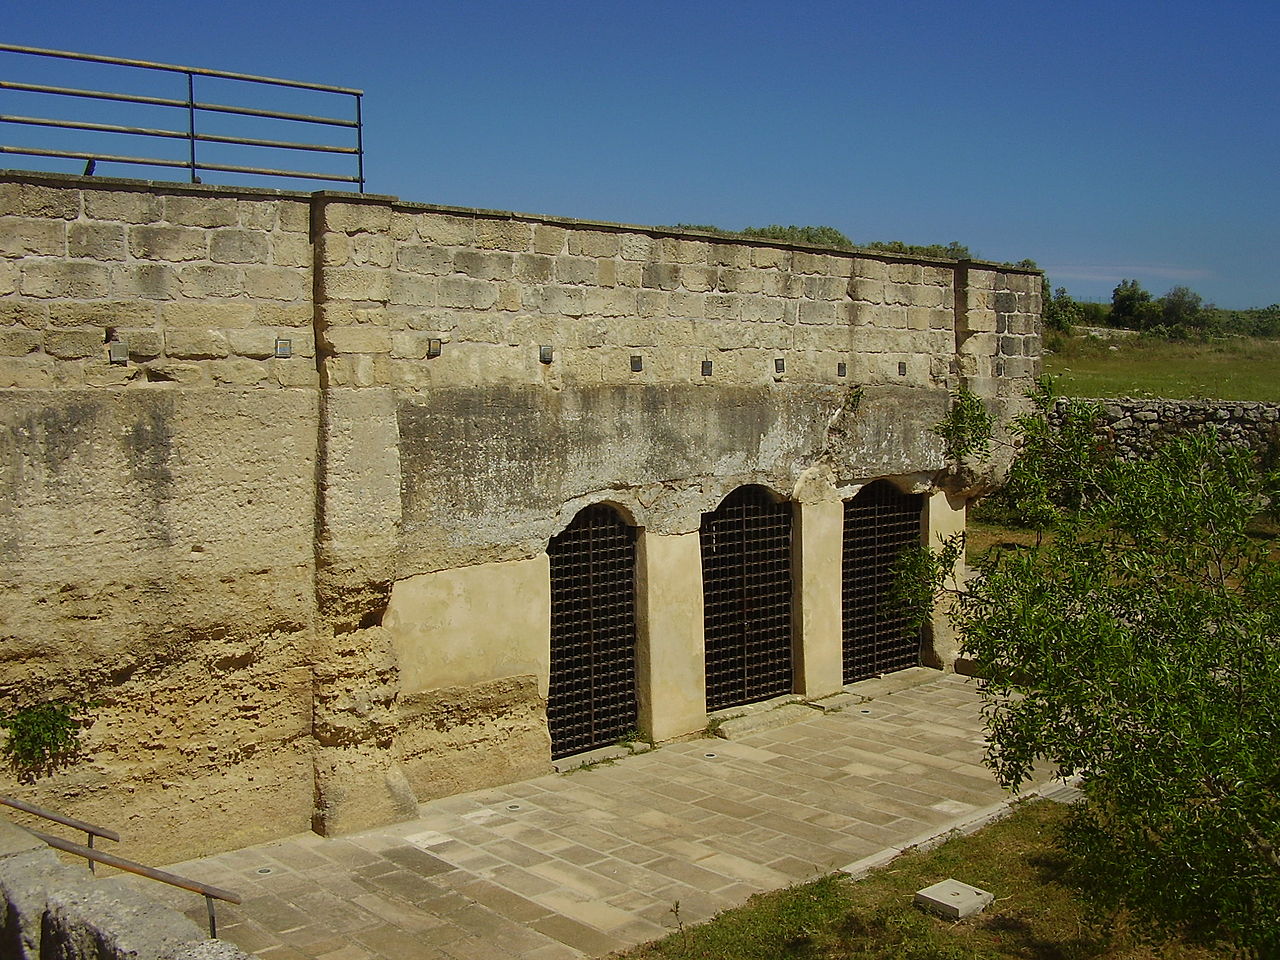 Lupiae, Cripta dei Santi Stefani di Vaste, Lecce, 23 May 2010